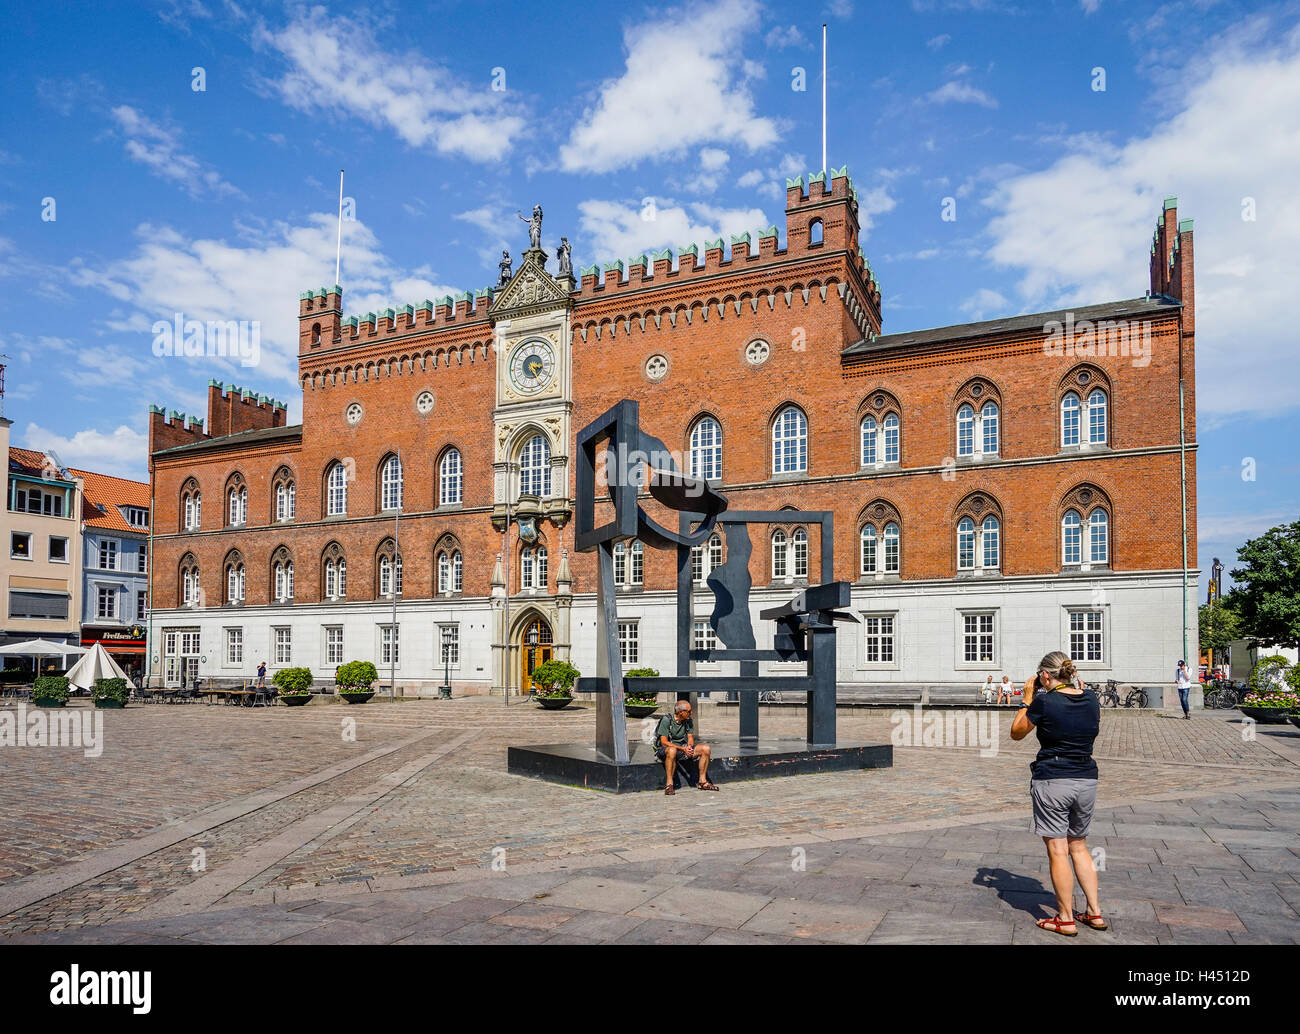 Dänemark, Fünen, Odense, Blick auf den Flakhaven zentralen Platz mit der Italienisch-gotischen Odense City Hall mit Mo Stahl Skulptur Stockfoto